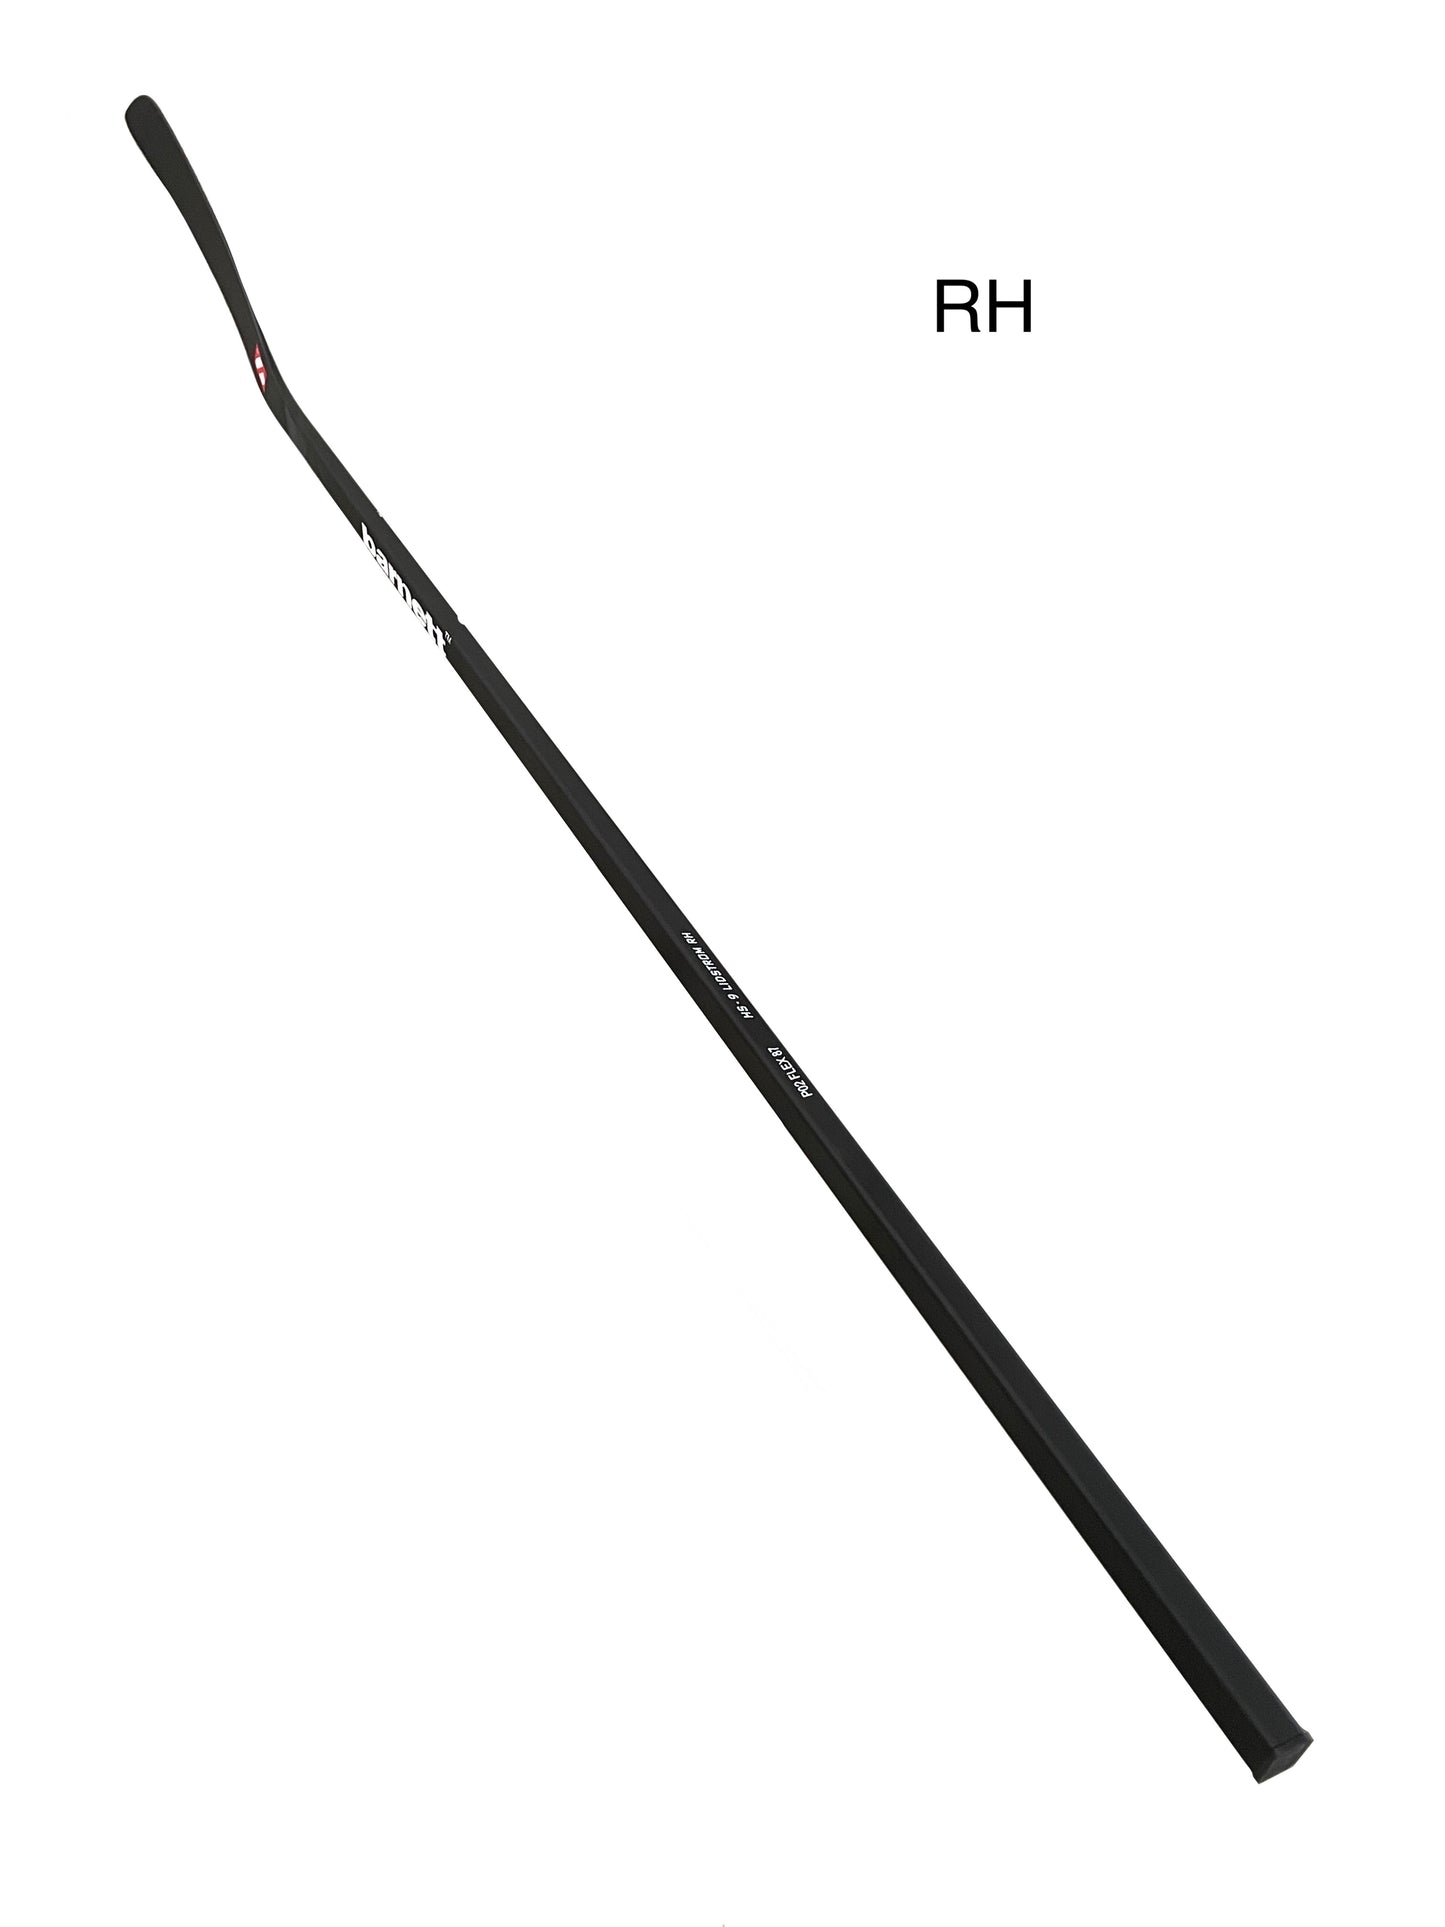 HS-9 Hockeyschläger aus Kohlenstoff mit hohem Modul